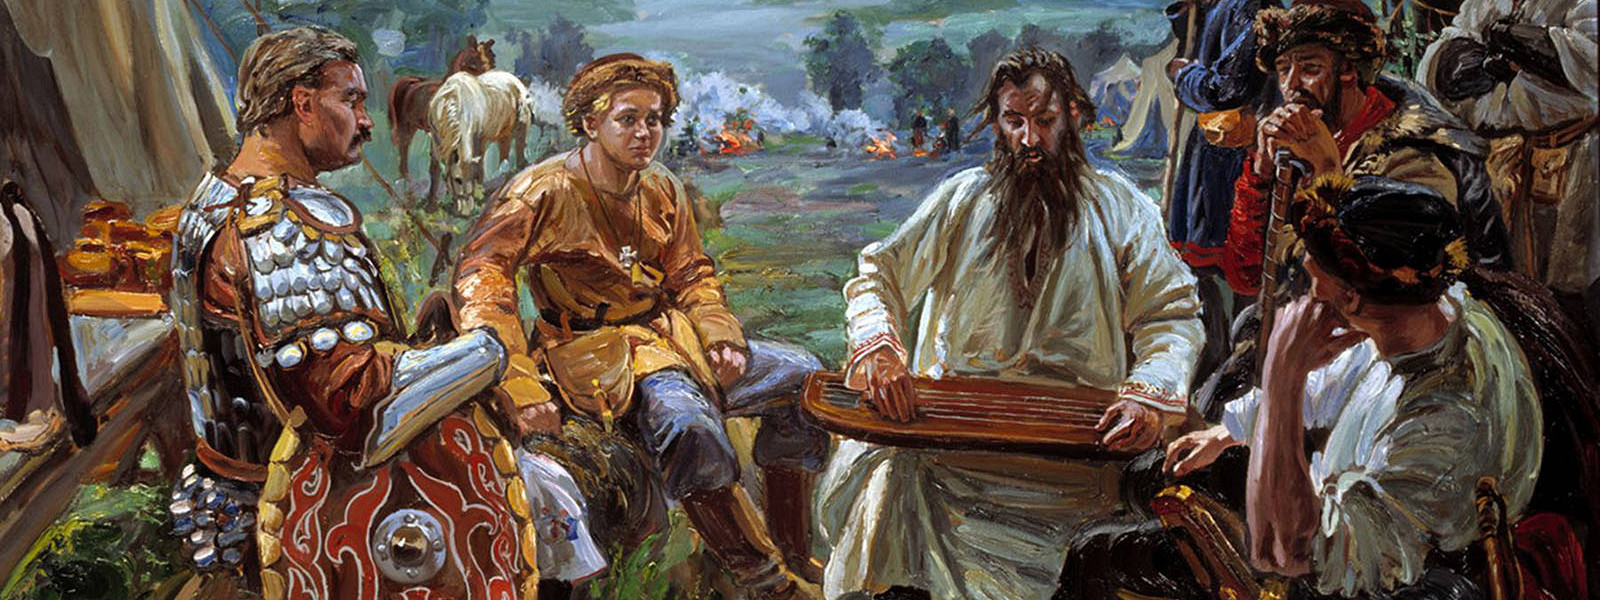 Журнал/Гигиена в Древней Руси: правда ли, что мы были чистоплотнее европейцев?